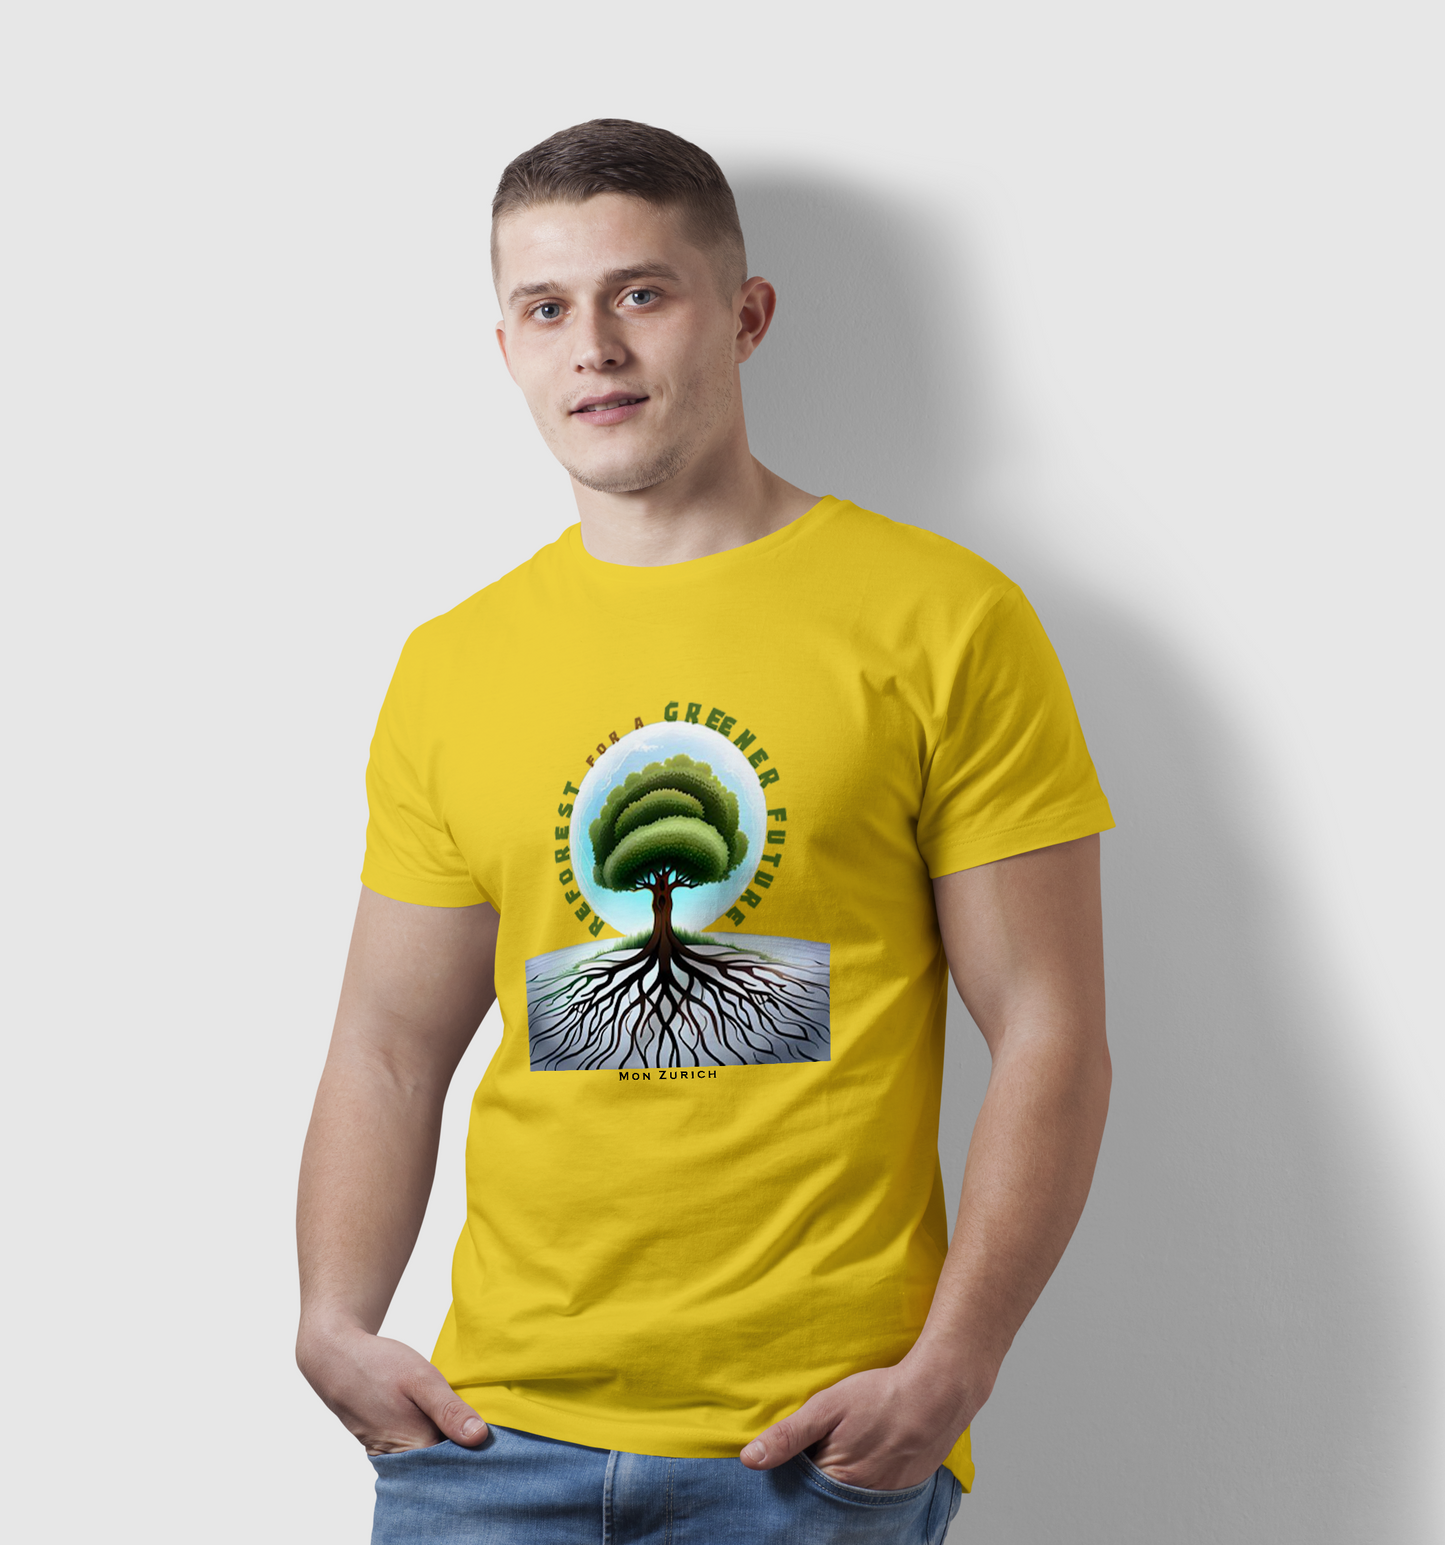 Reforest for a Greener Future T-shirt in Light - Mon Zurich Originals